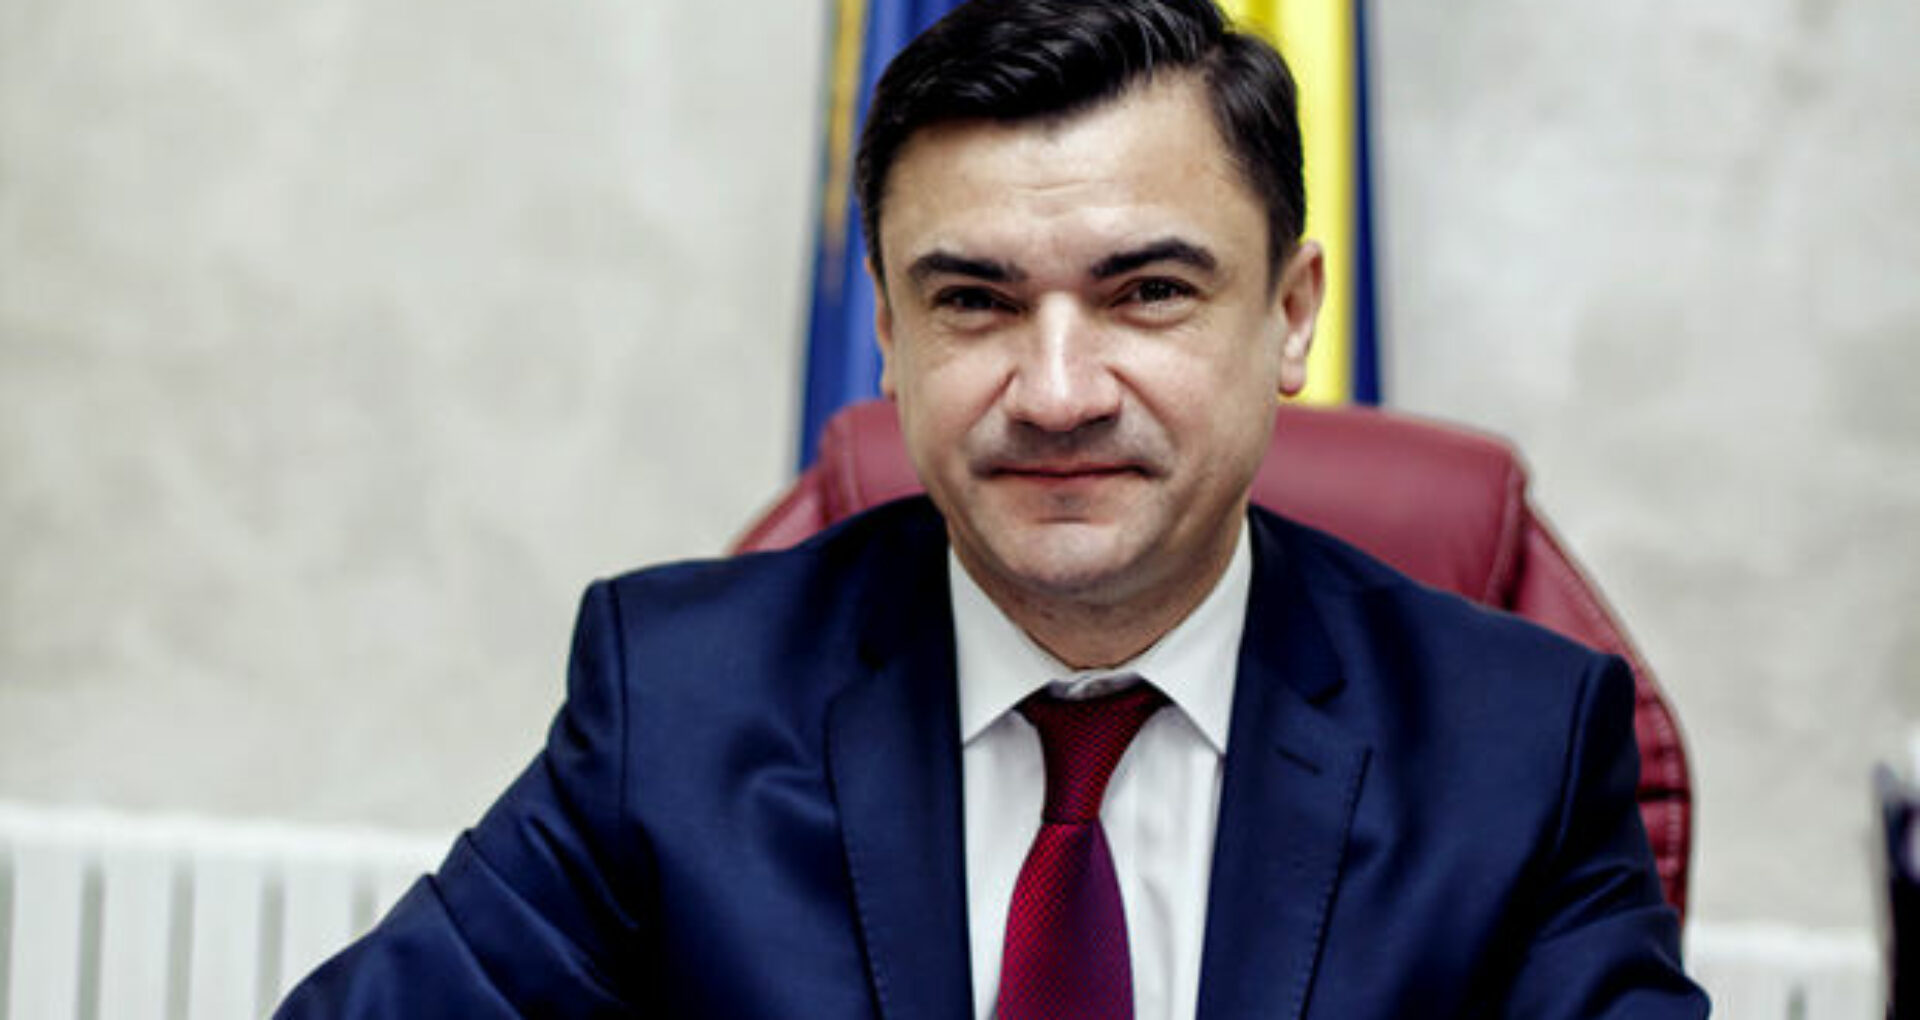 Primarul Mihai Chirica a fost plasat de procurorii DIICOT sub control judiciar pentru o perioadă de 60 de zile